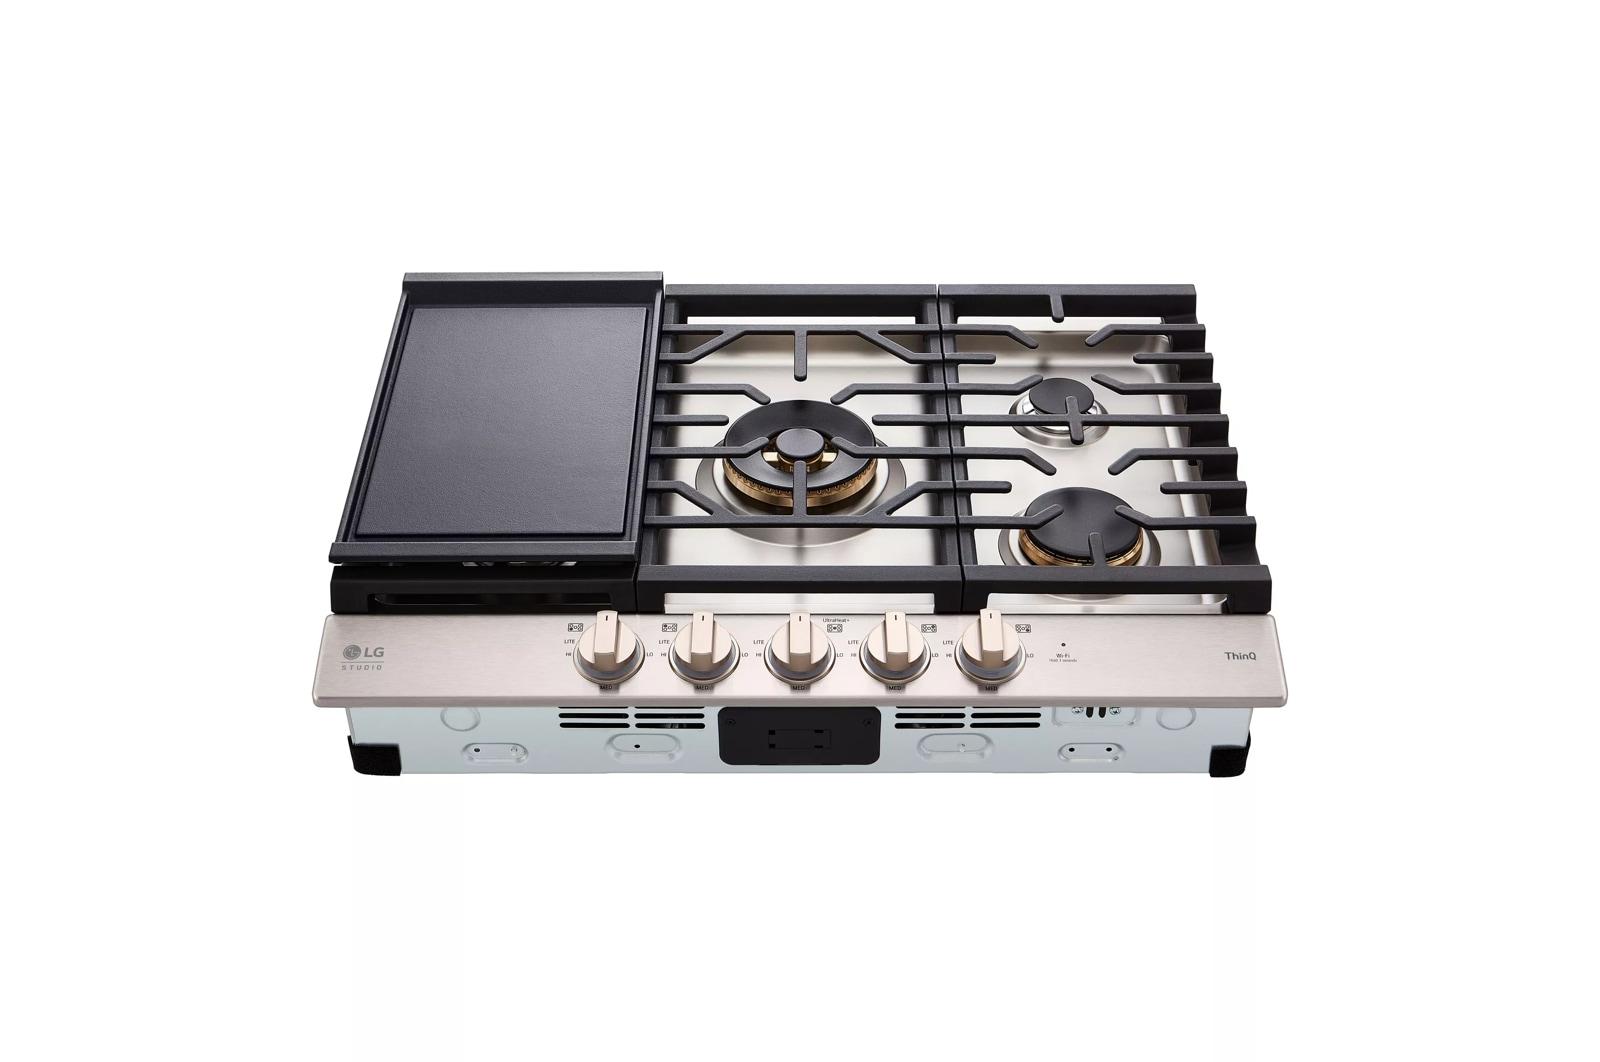 LG STUDIO 30" UltraHeat™ Gas Cooktop with EasyClean®